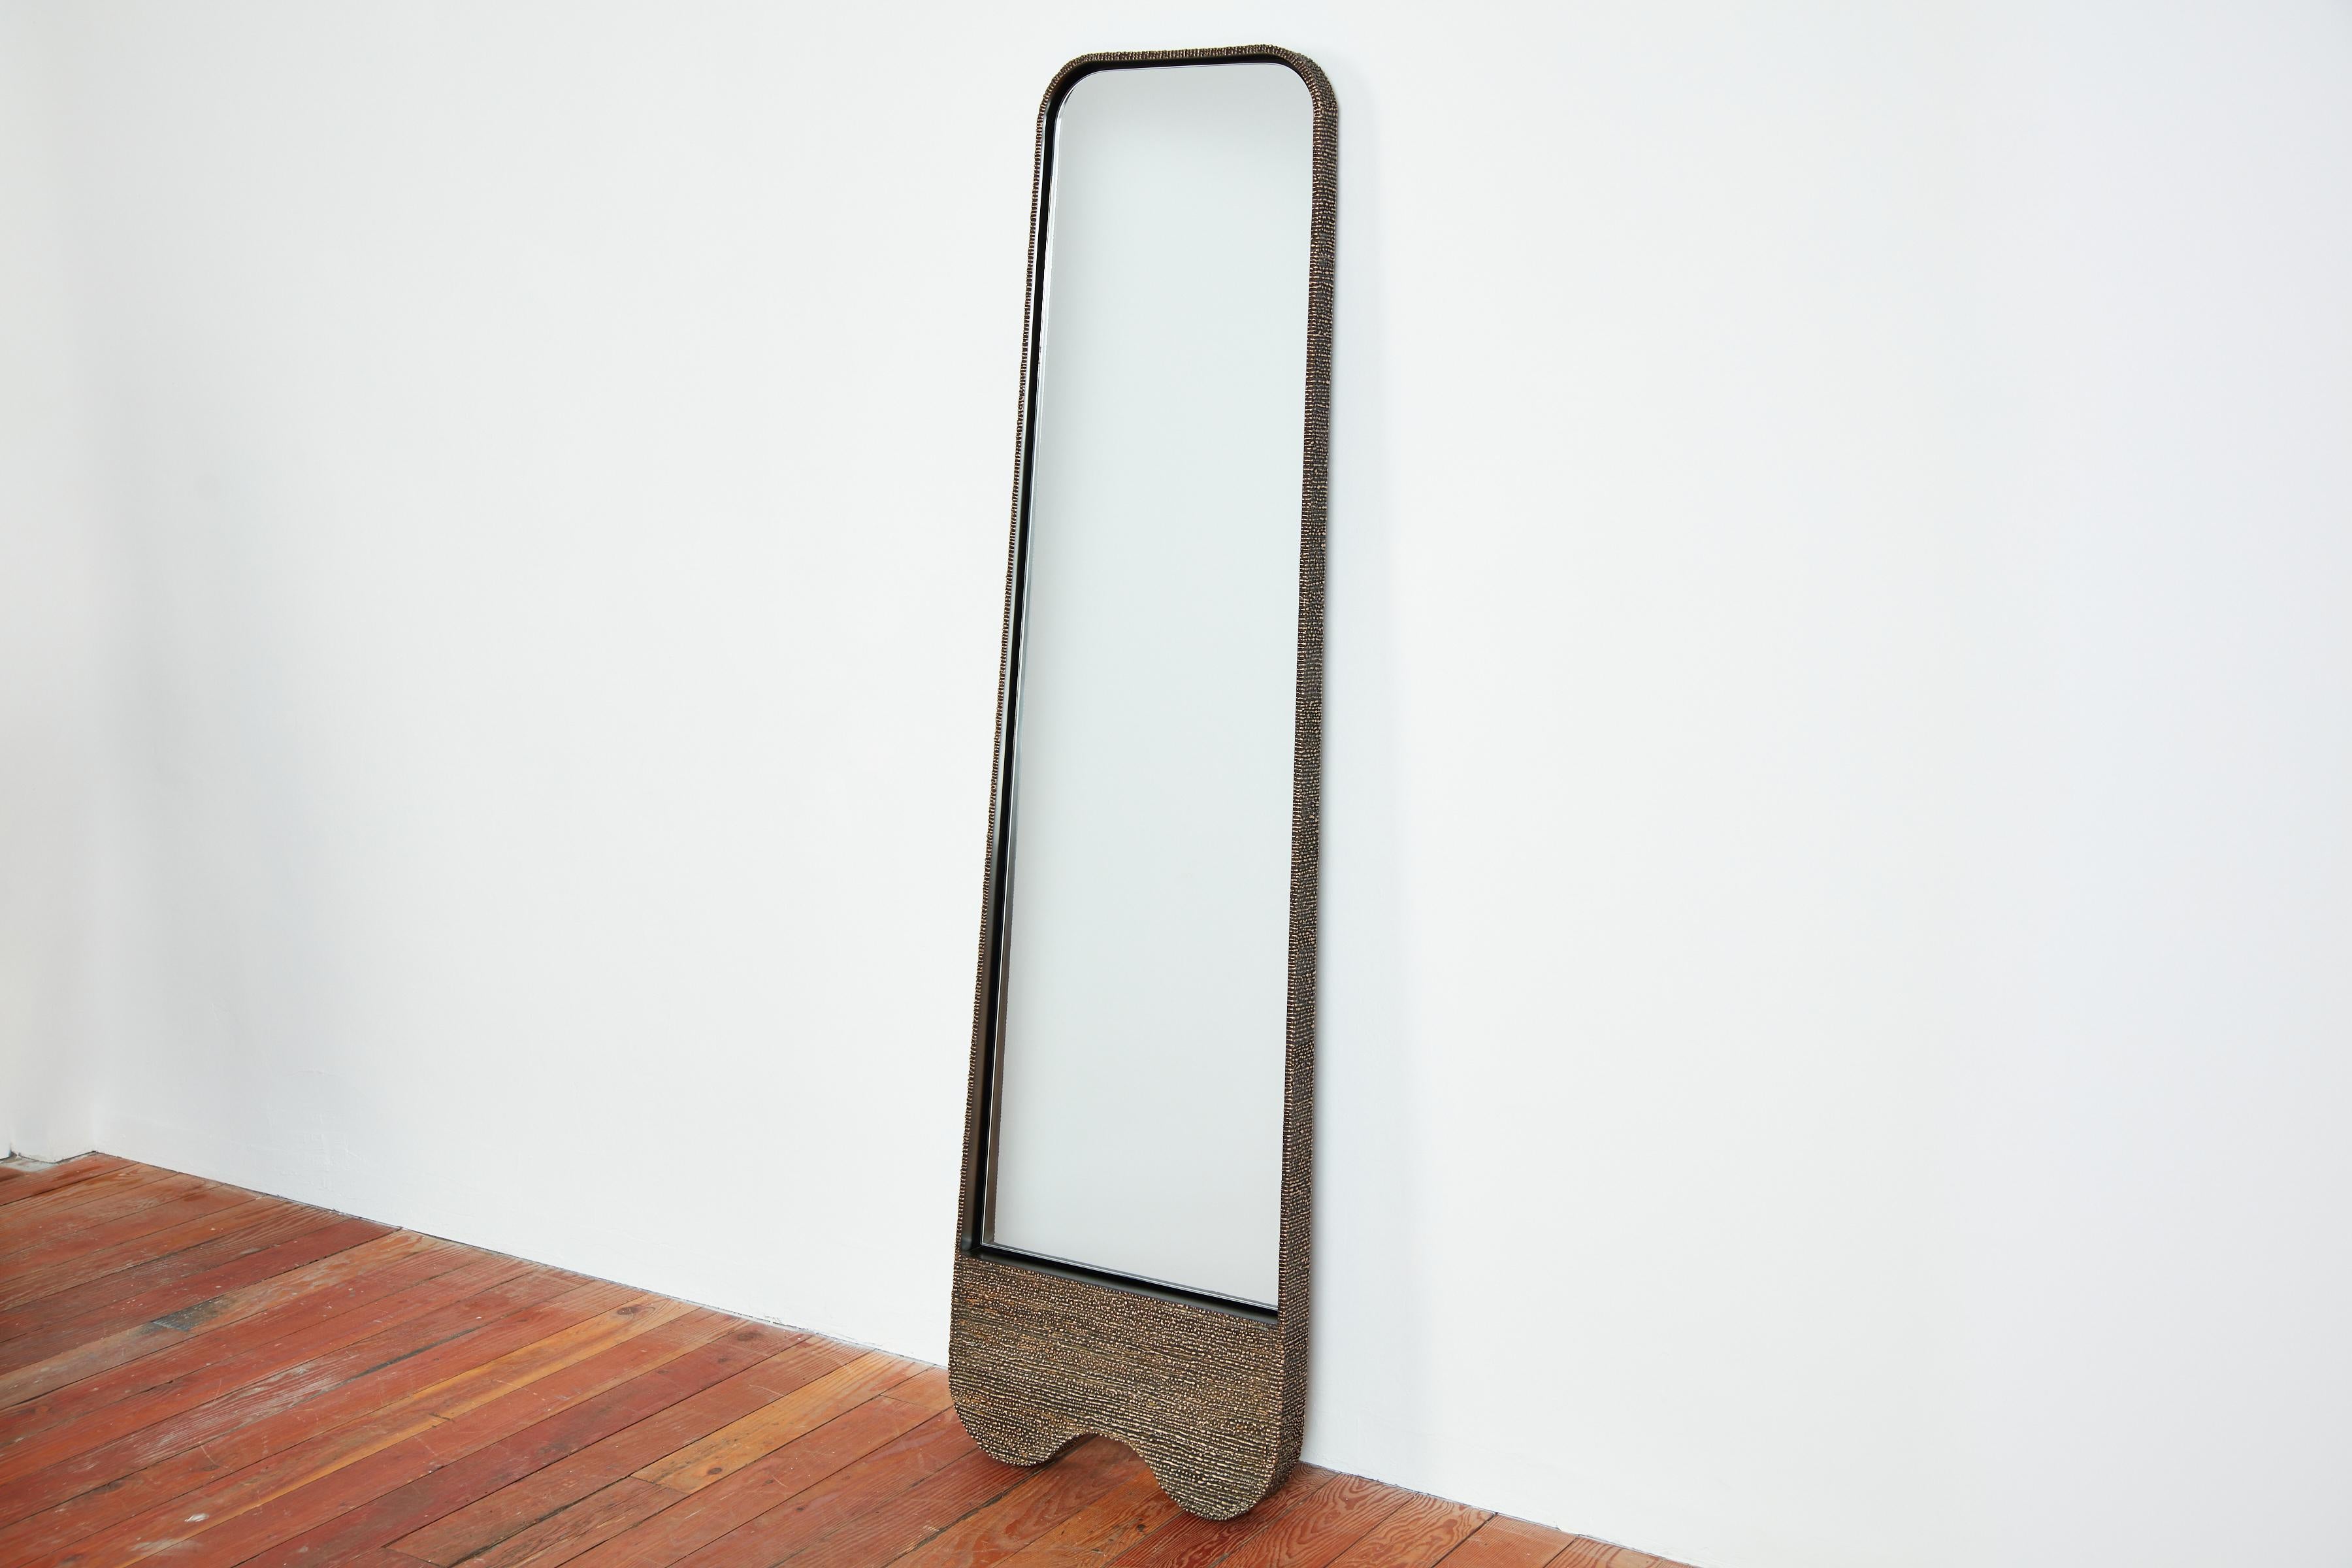 Ein faszinierender Luxus-Spiegel, der Stahl, Bronze und eine geschmolzene Oberfläche miteinander verbindet. 

William Emmersons brillant gestalteter 